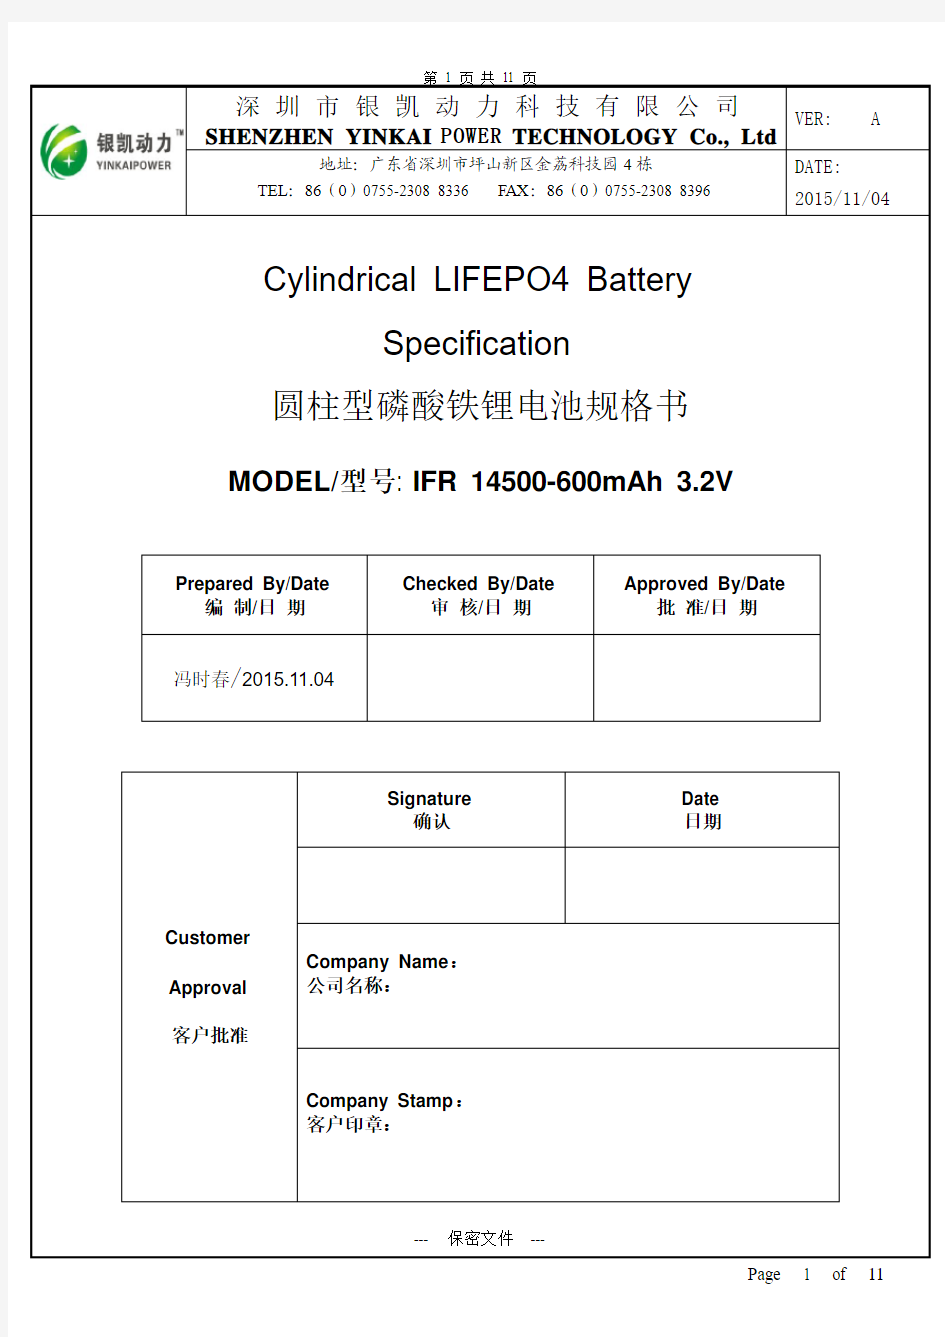 IFR 14500-600mAh 3.2V磷酸铁锂电池规格书超详细版